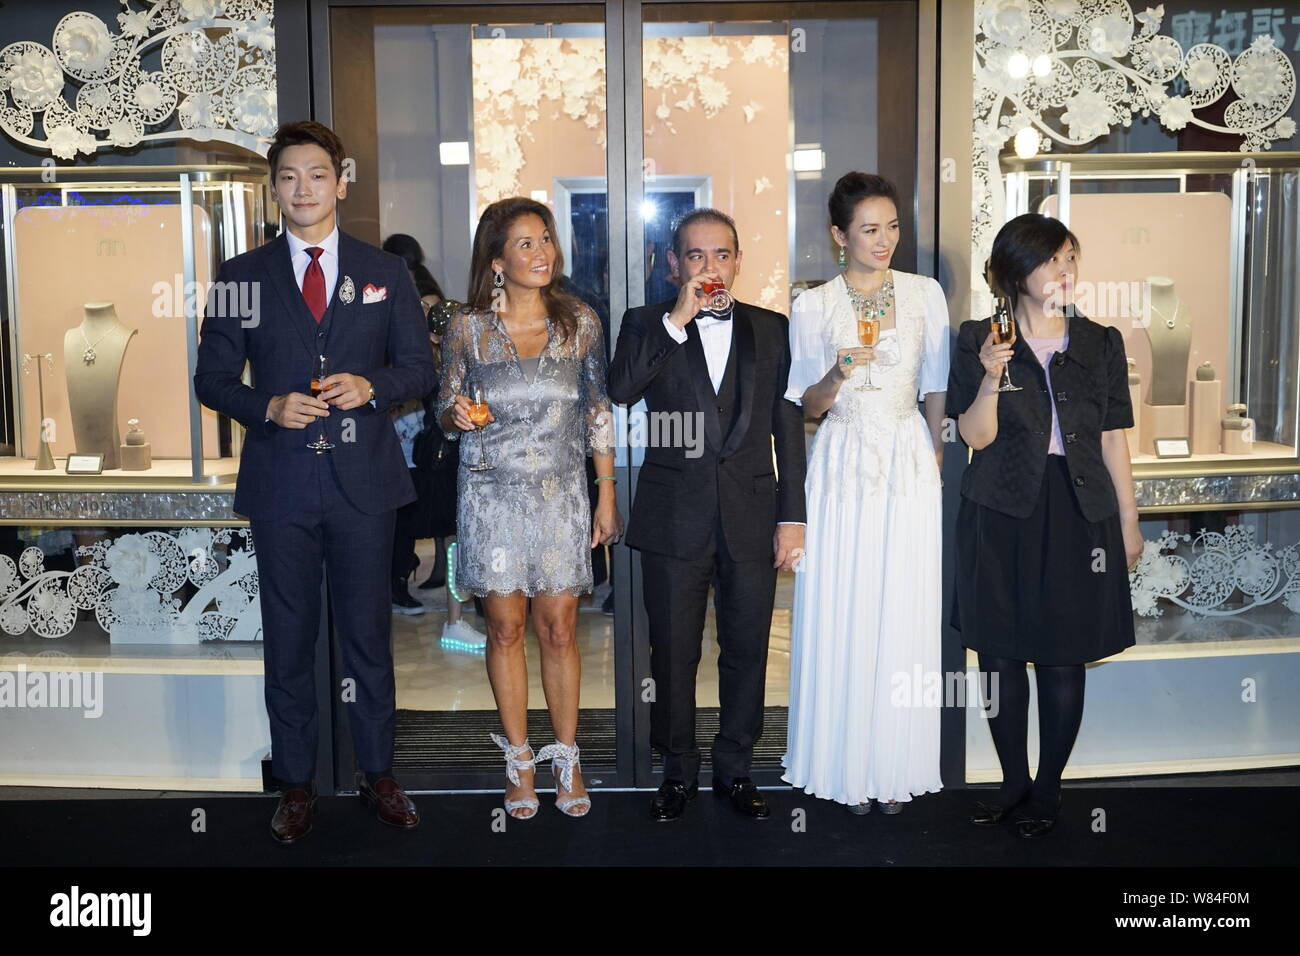 Koreanische Sänger und Schauspieler Jung Ji-hoon, Links, besser bekannt unter seinem Künstlernamen Regen bekannt, Diamant Schmuck Designer Nirav Modi, Mitte, und Chinesischen actr Stockfoto